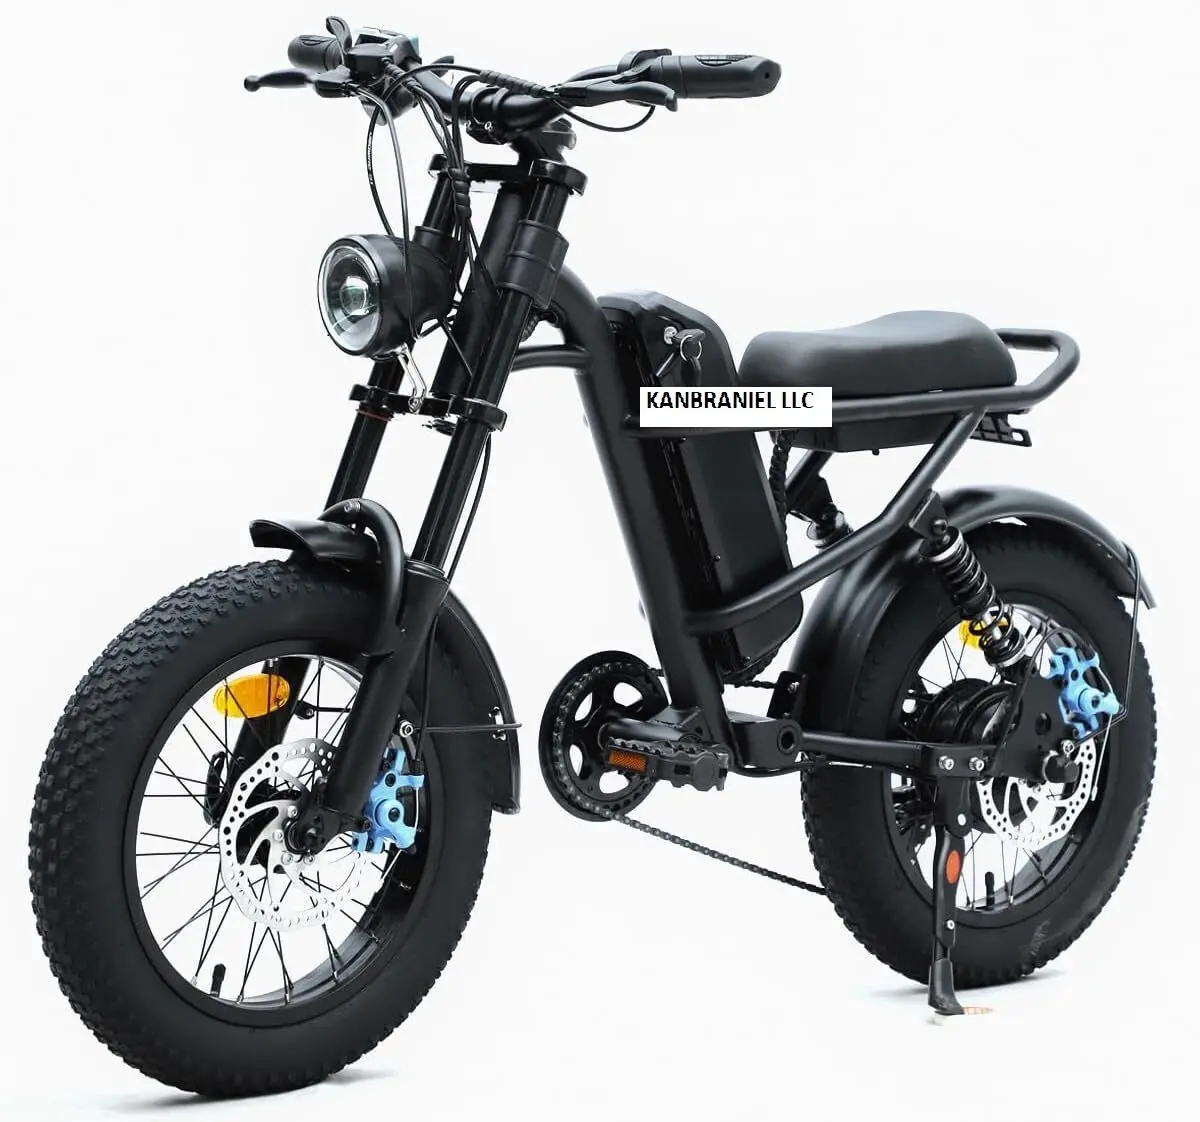 Xách tay chất béo lốp ELEC. tric bụi bẩn xe đạp đi lại nông thôn Ebike 25 km/h Kid có thể điều chỉnh chỗ ngồi hiển thị pin Lithium Ion